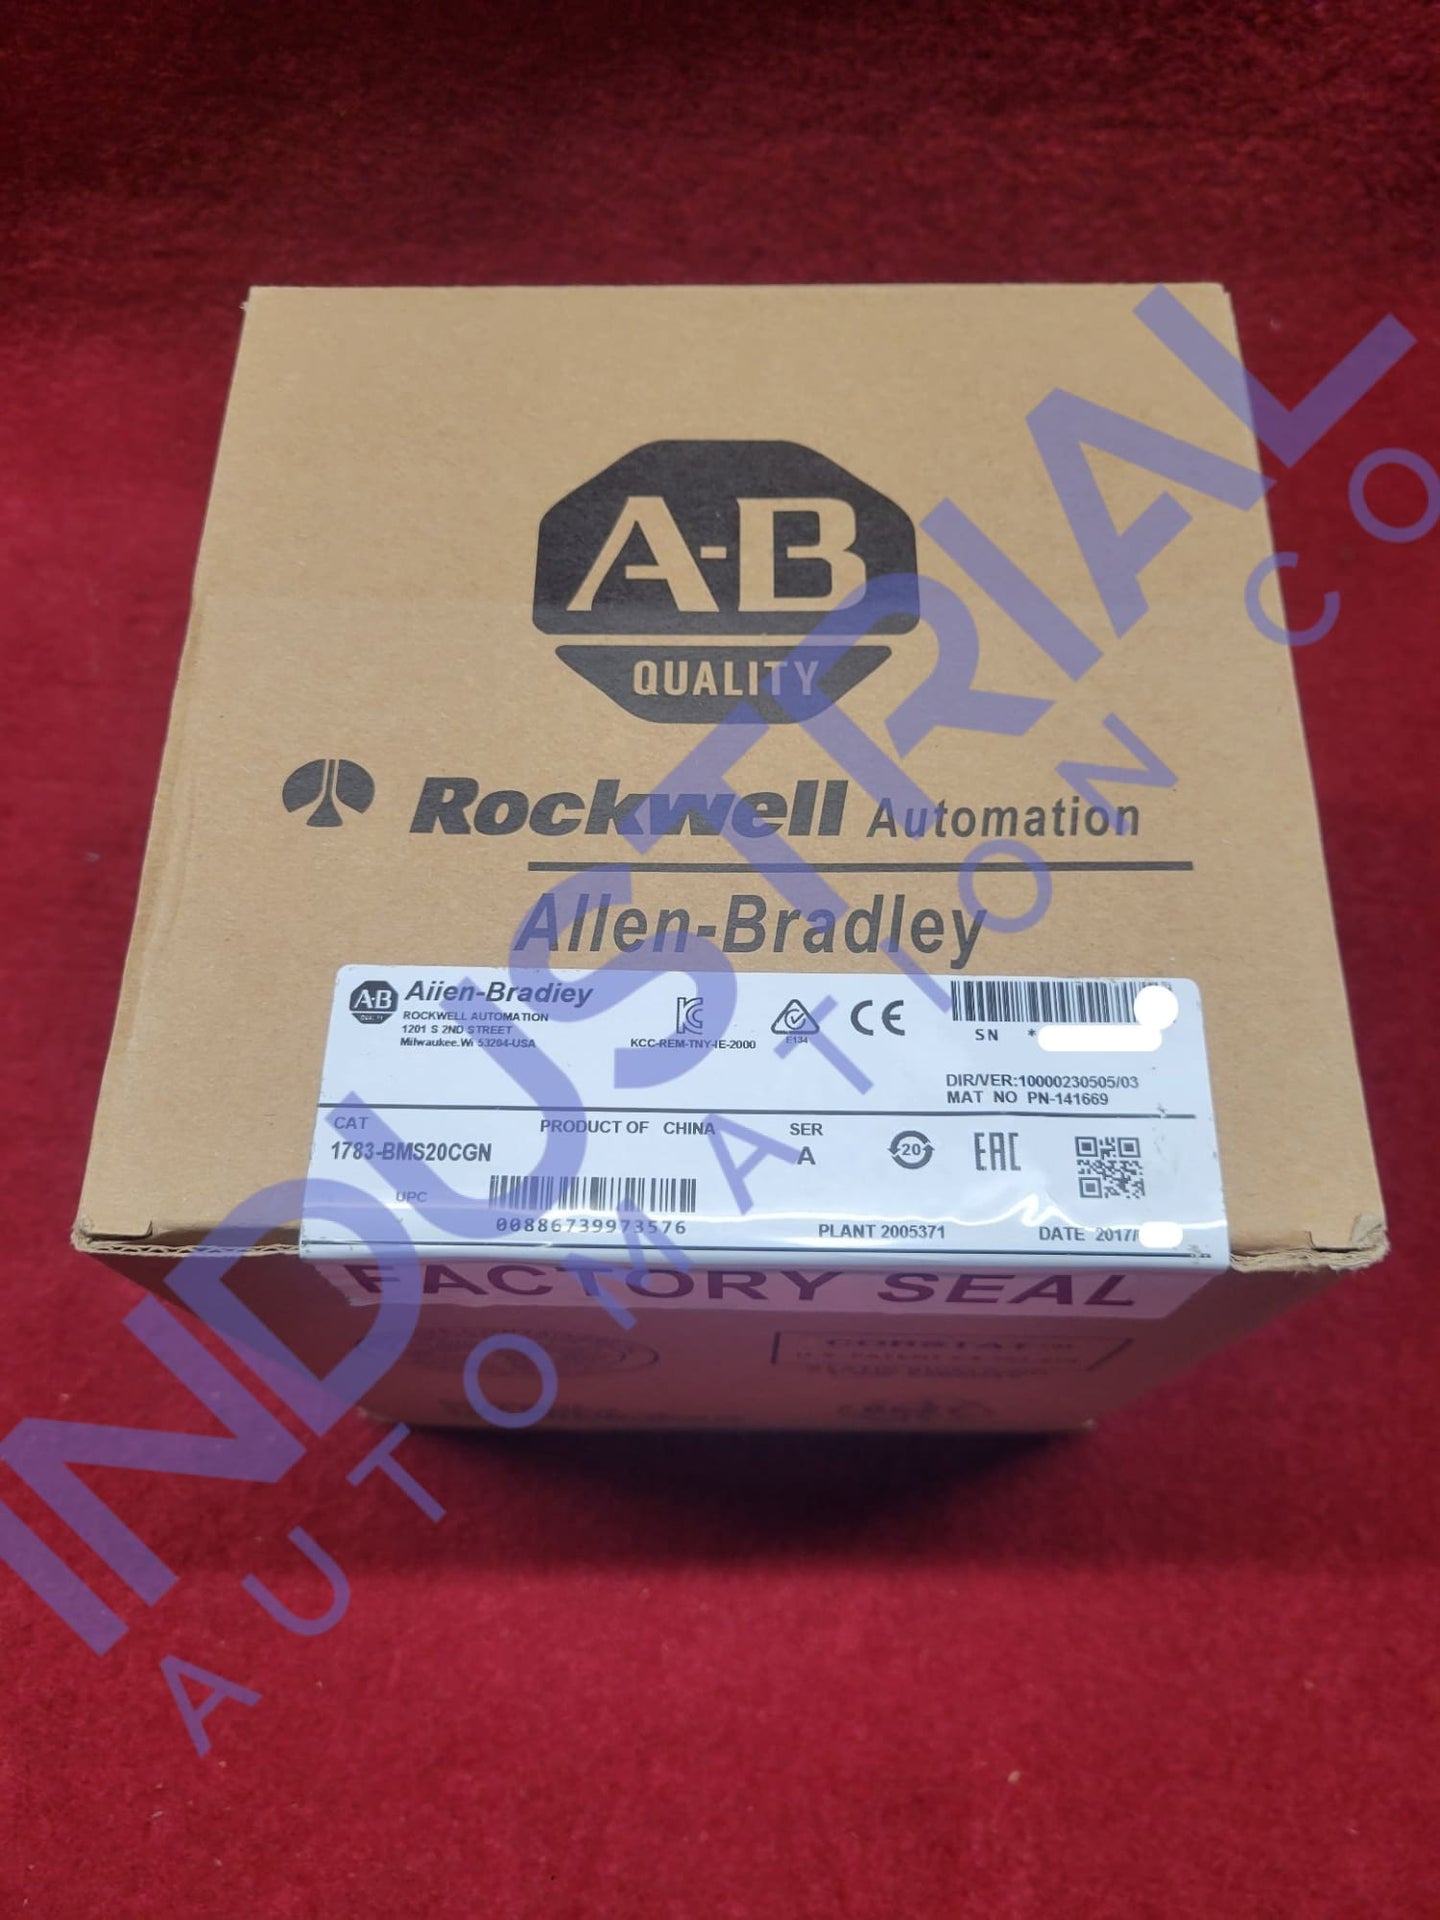 Allen - Bradley 1783 - Bms20Cgn